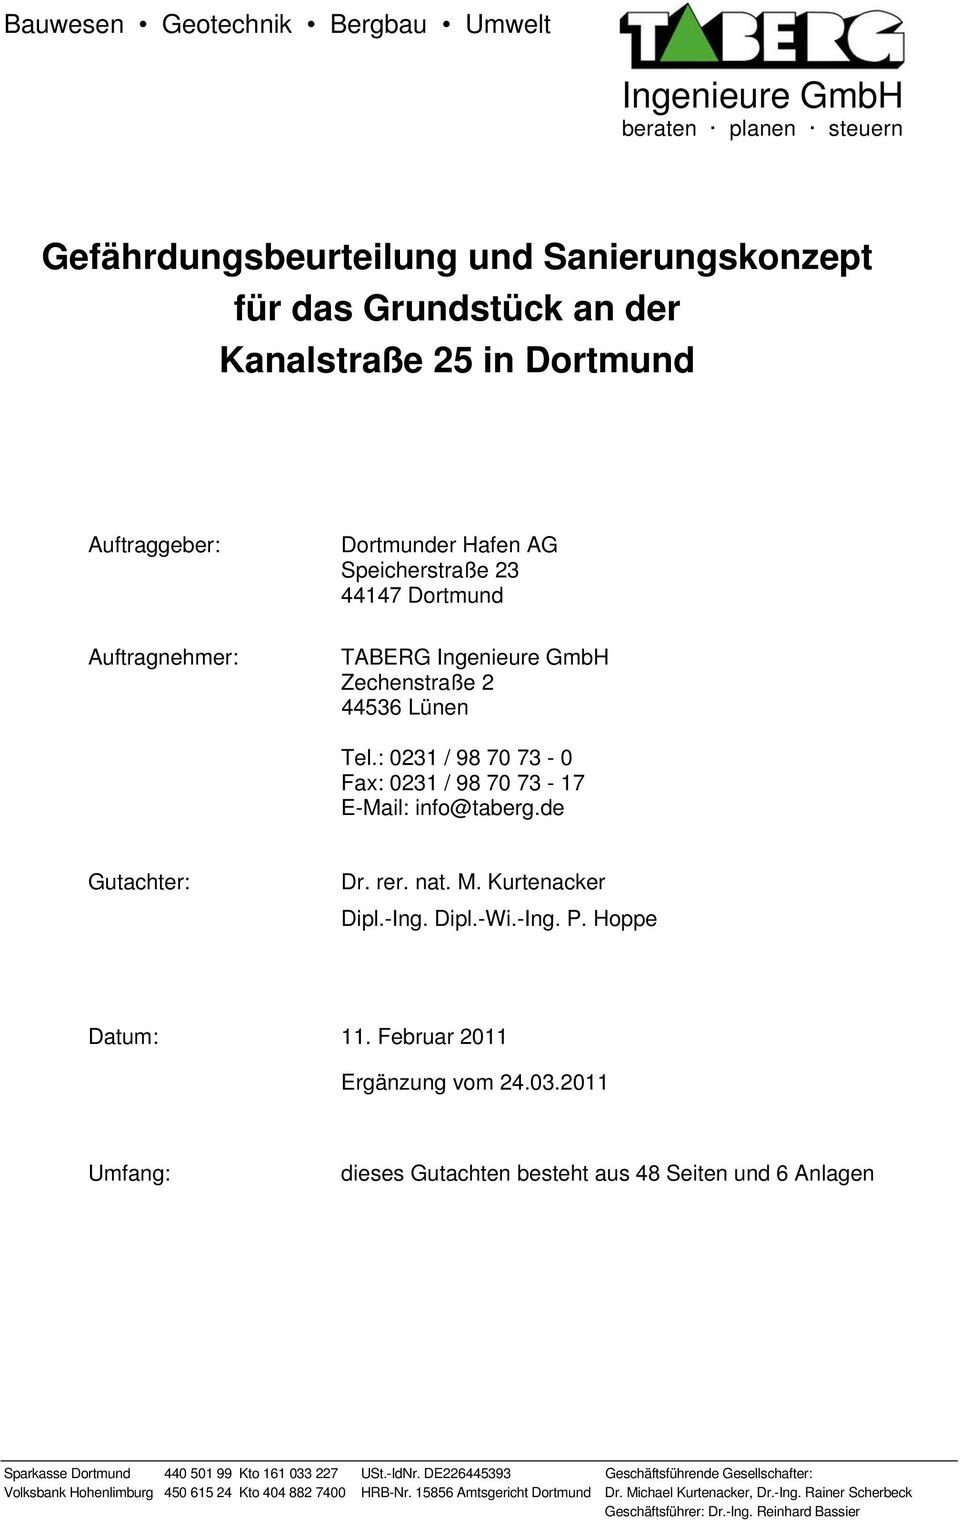 de Gutachter: Dr. rer. nat. M. Kurtenacker Dipl.-Ing. Dipl.-Wi.-Ing. P. Hoppe Datum: 11. Februar 2011 Ergänzung vom 24.03.